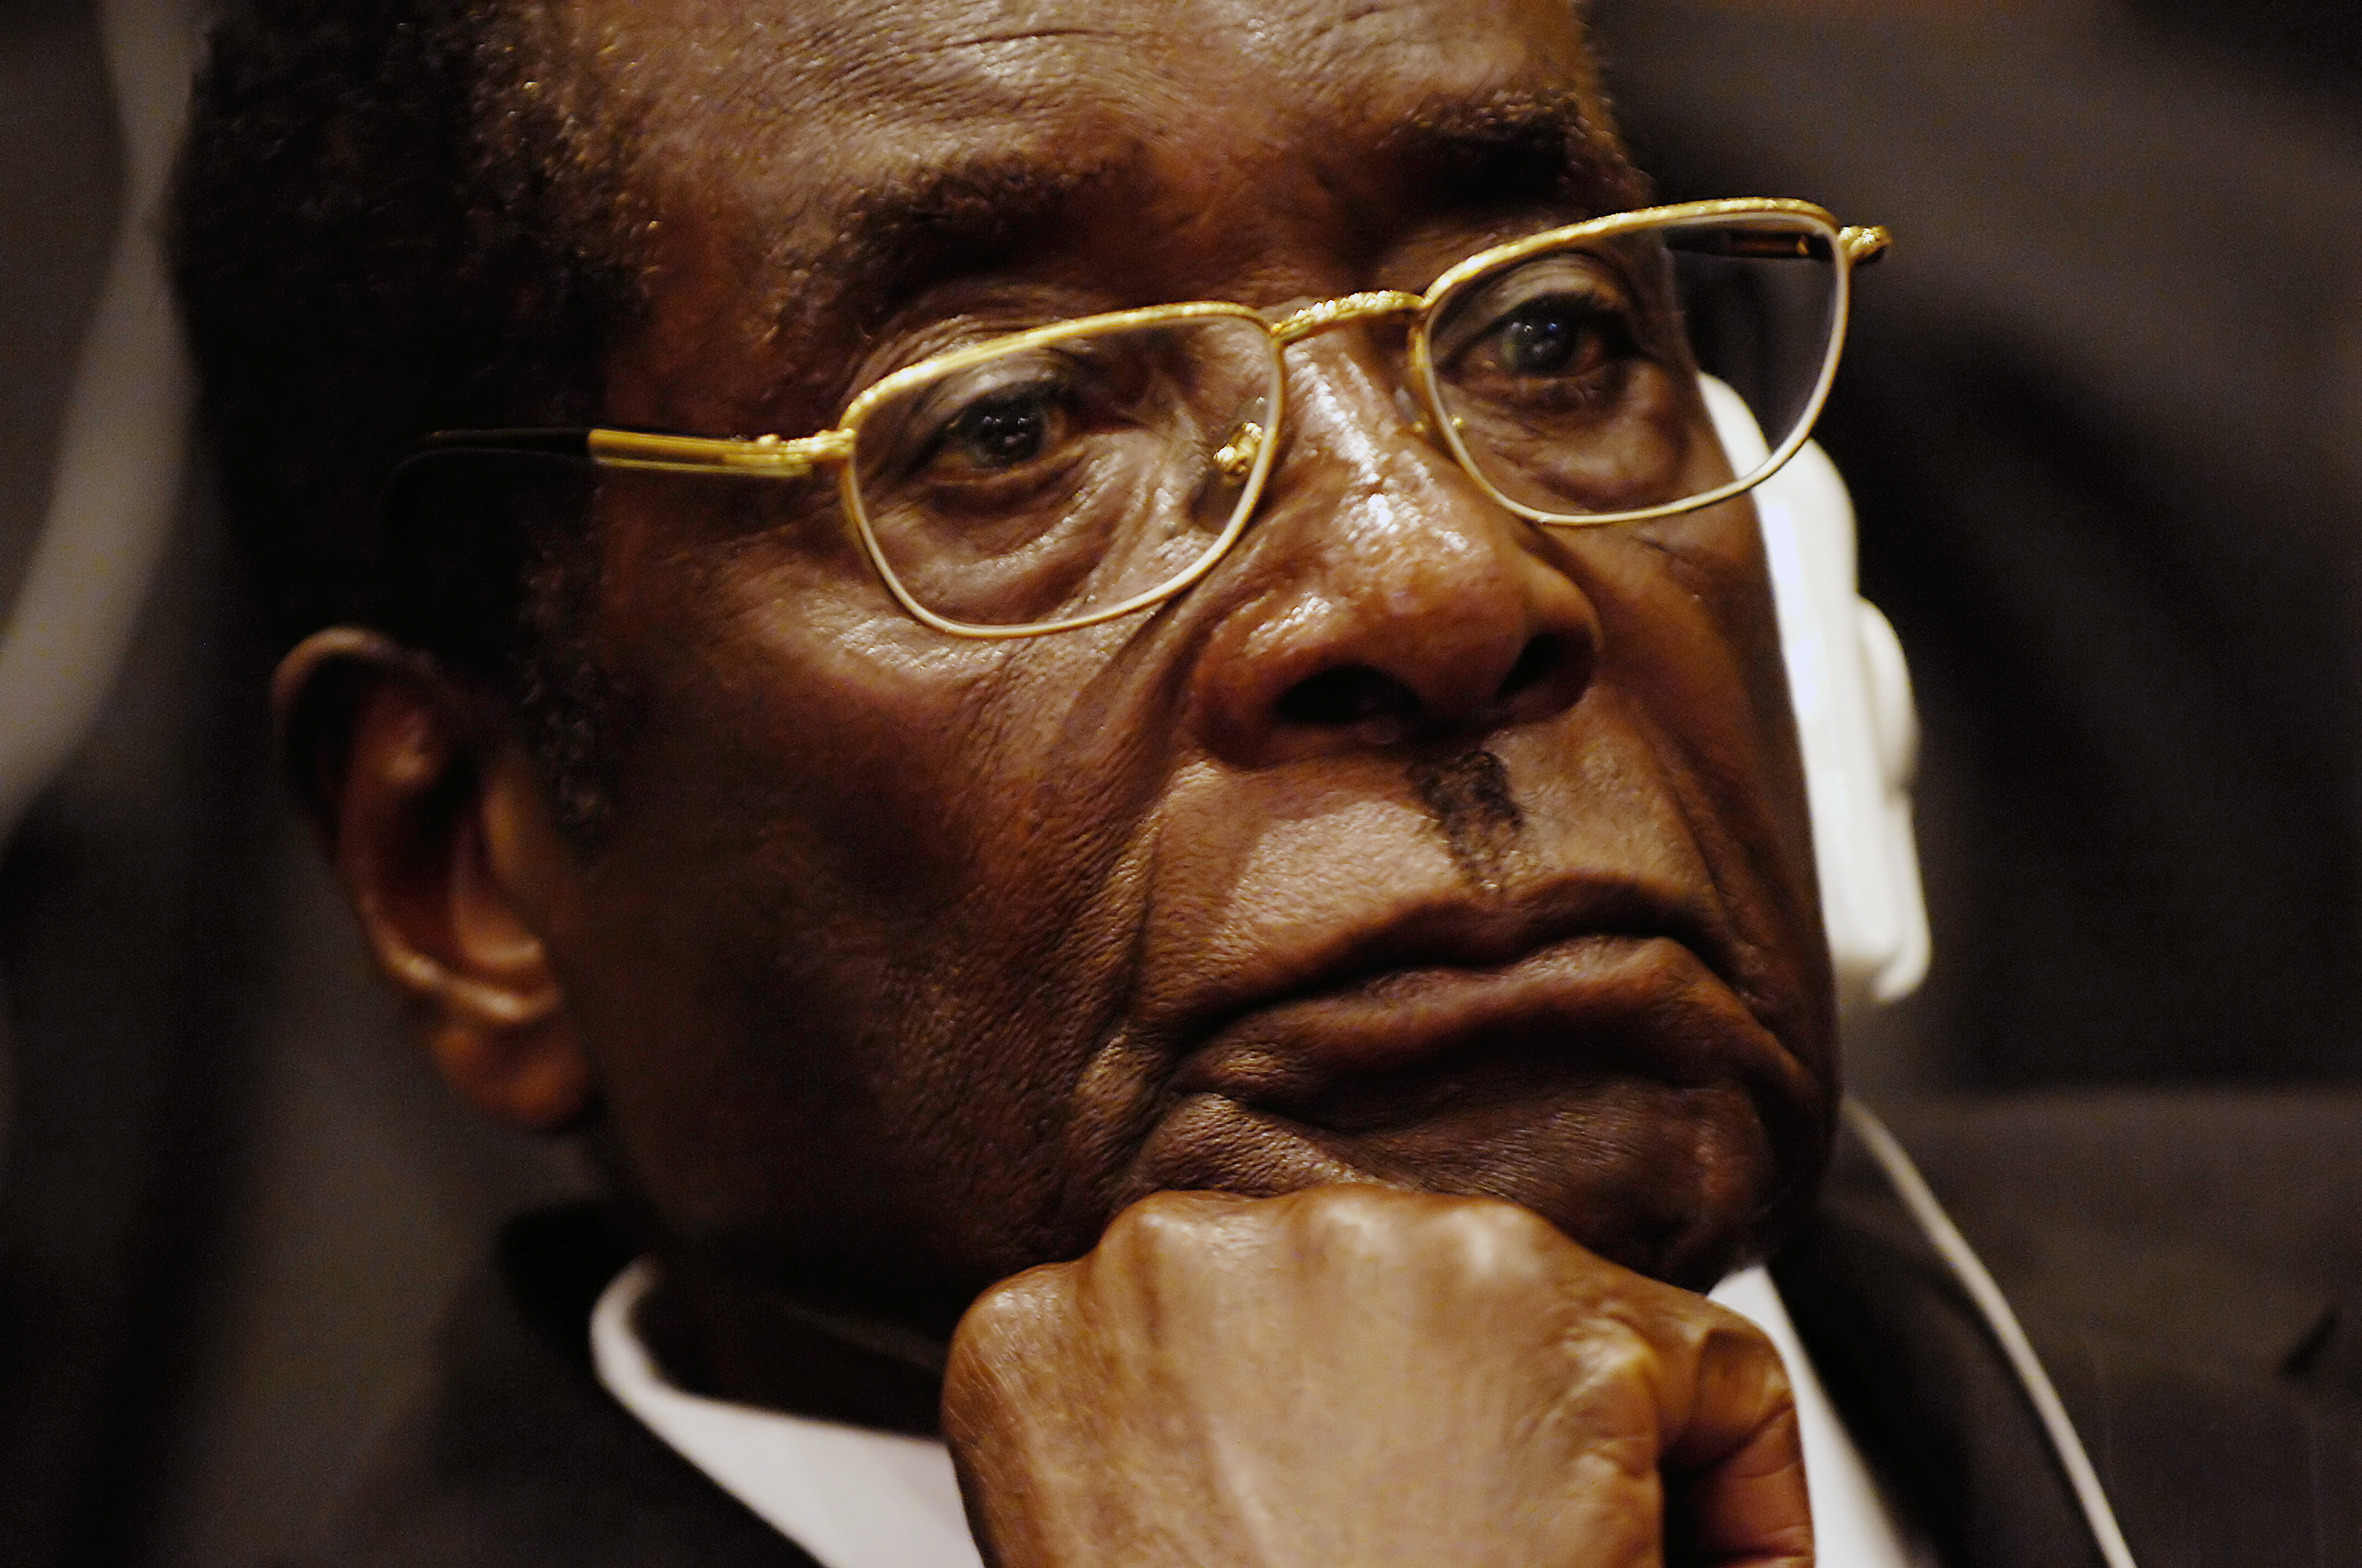 Europe Conditionally Lifts Travel Ban on Zimbabwe’s Mugabe